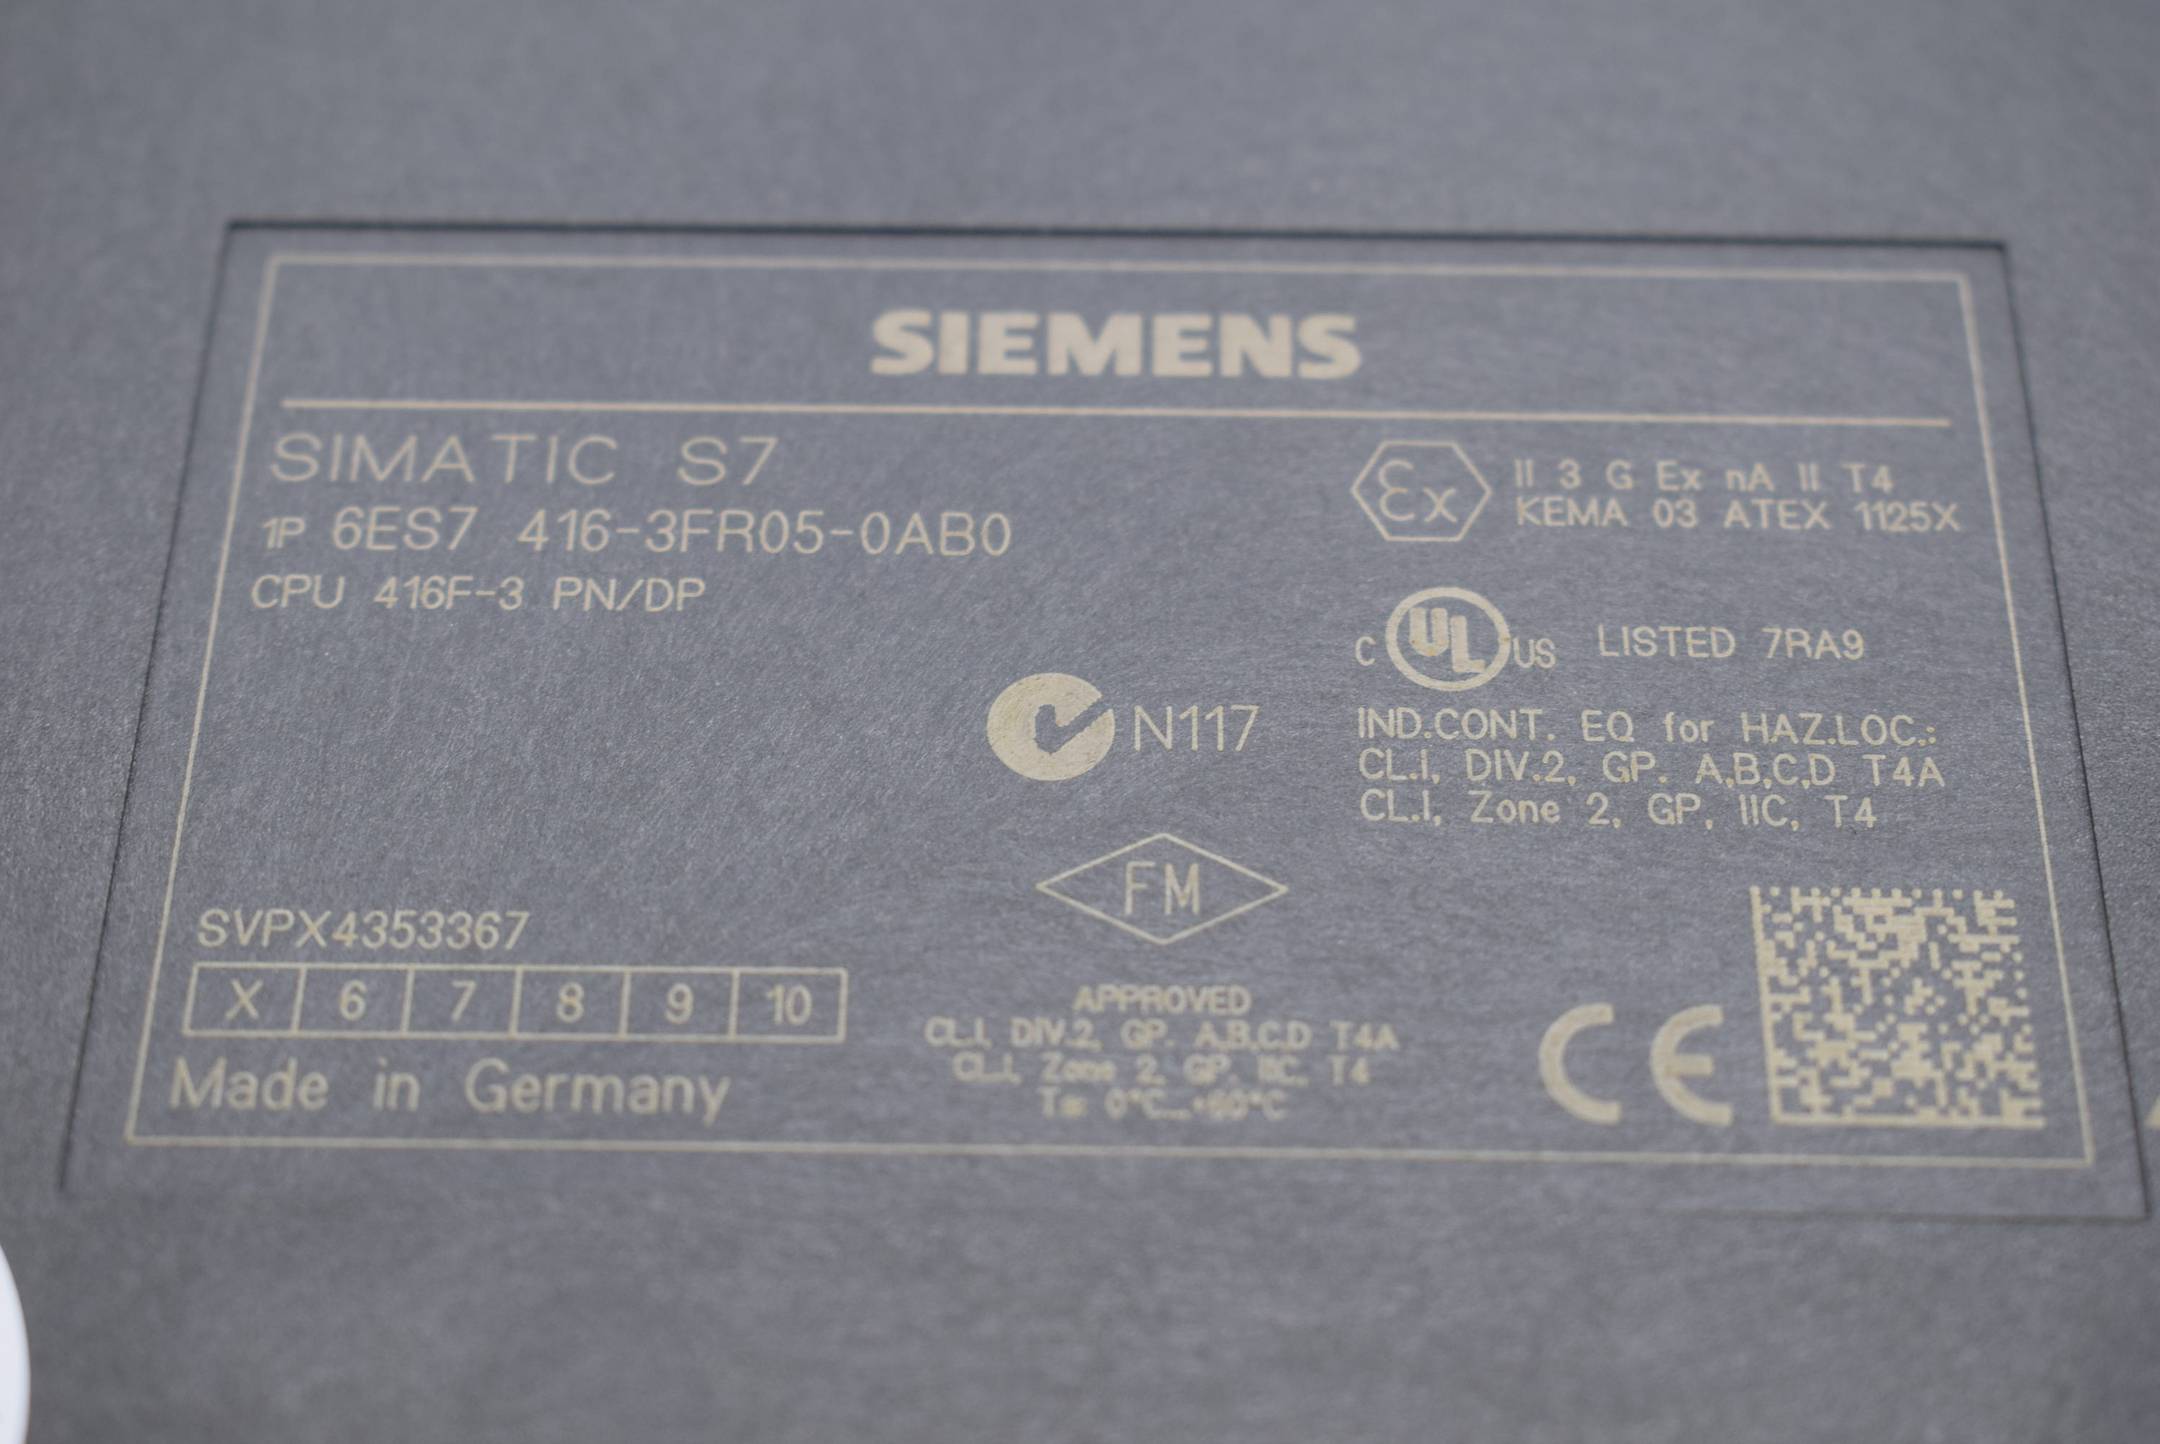 Siemens simatic S7-400 CPU 416F-3 PN/DP 6ES7 416-3FR05-0AB0 (6ES7416-3FR05-0AB0) E5